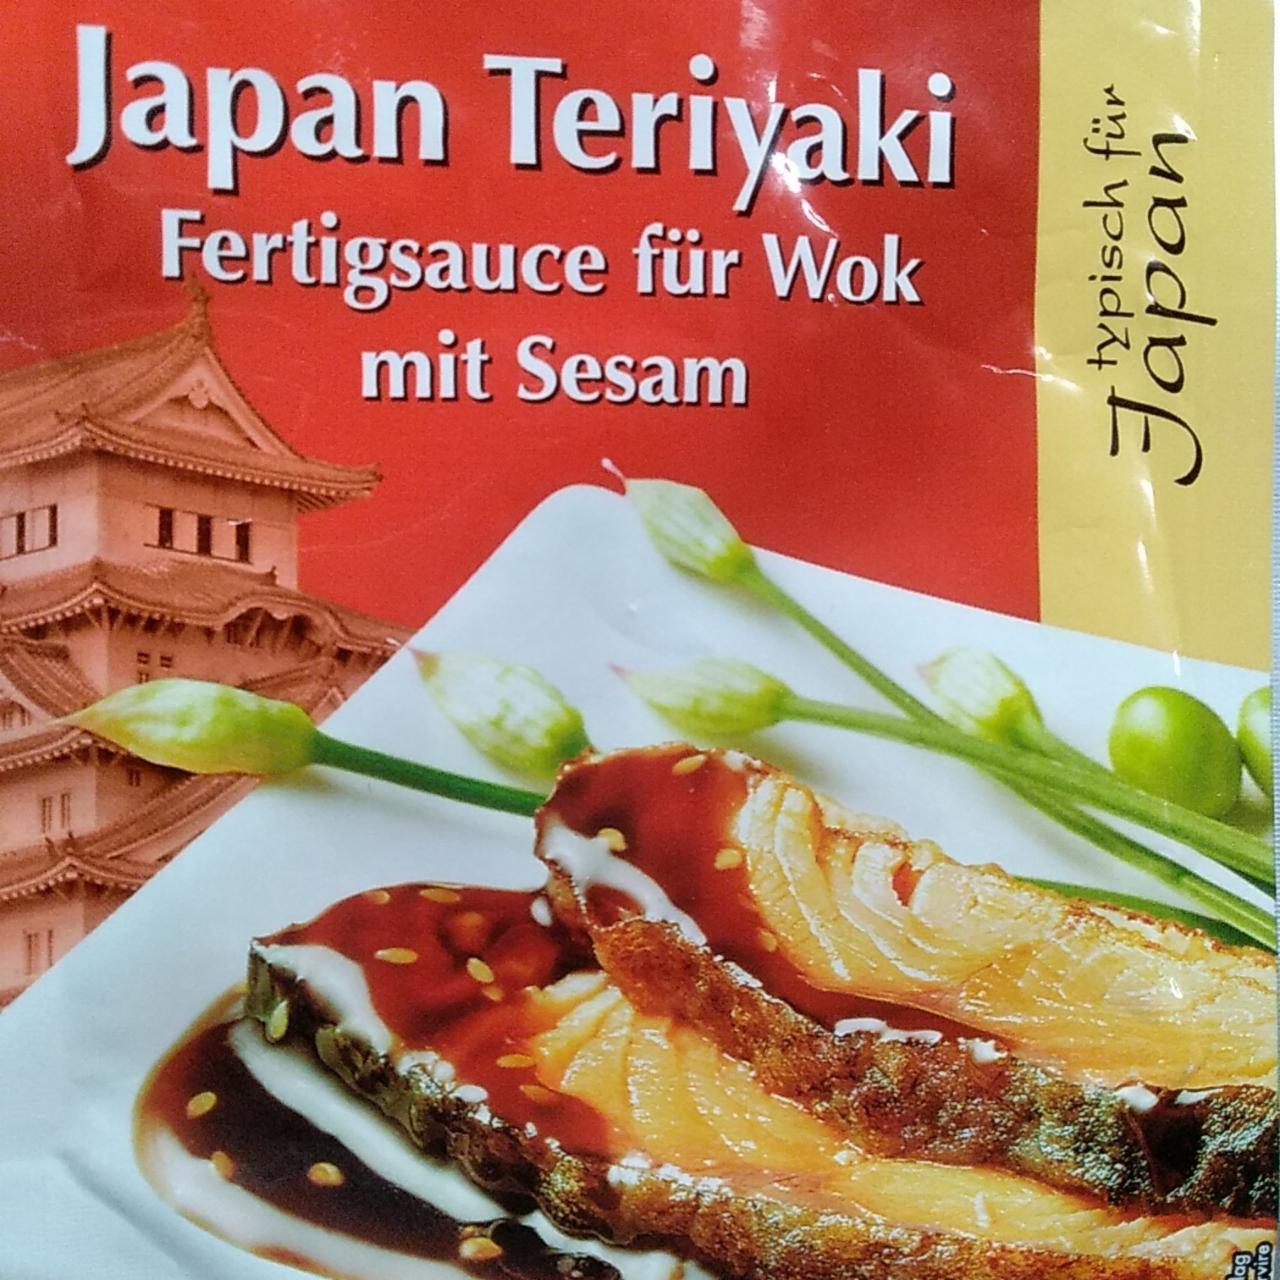 Fotografie - Japan Teriyaki Fertigsauce für Wok mit Sesam